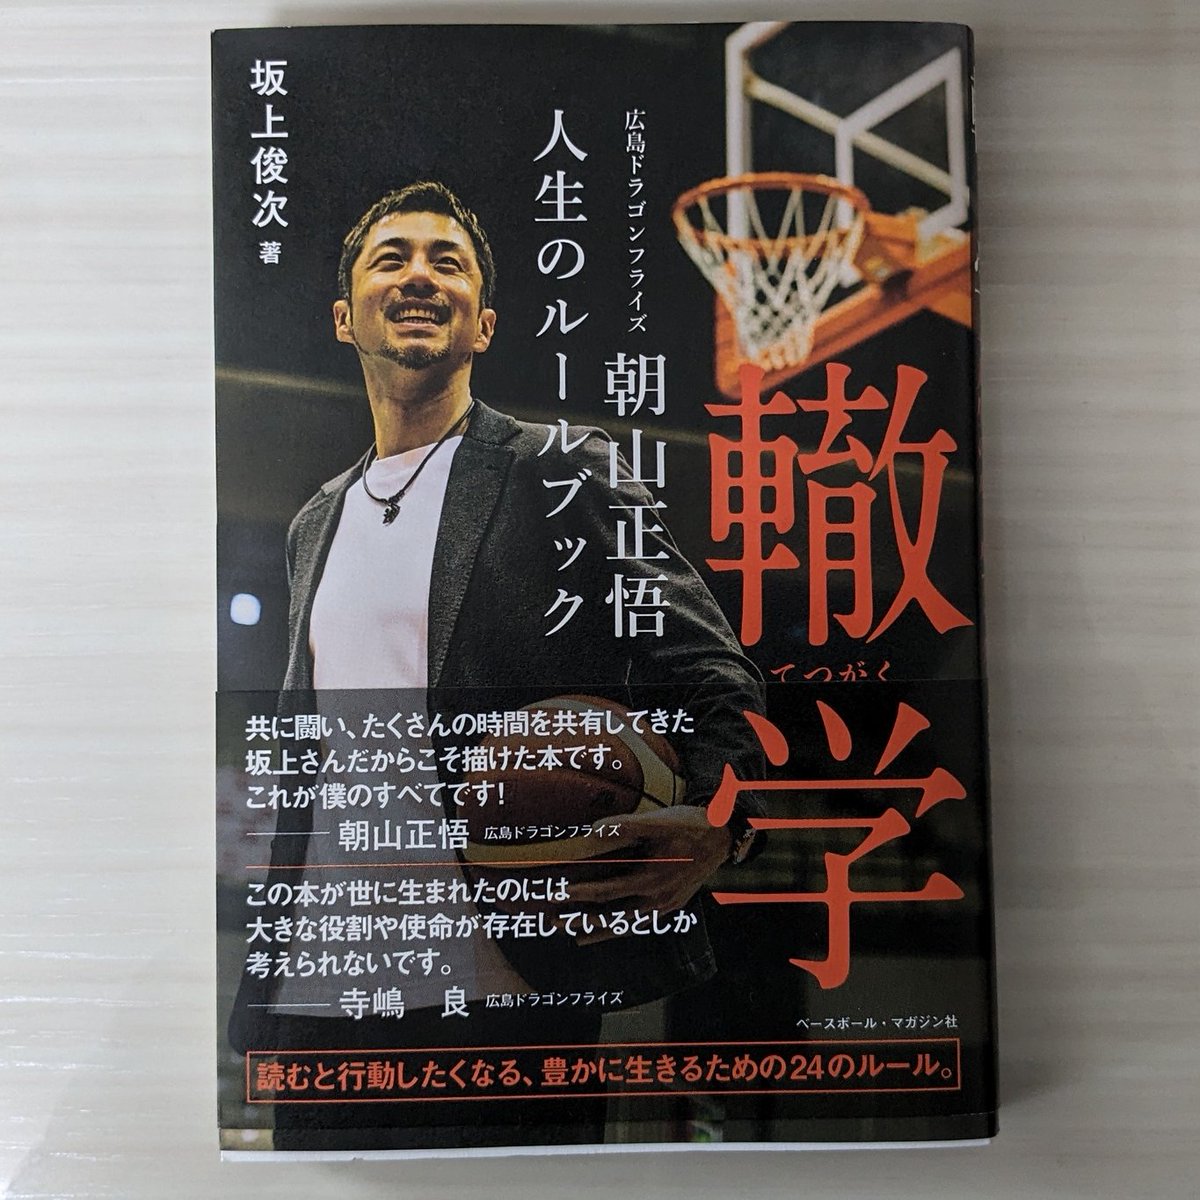 #読了
『轍学』

今季で現役引退を発表した、広島ドラゴンフライズ所属のバスケットボール選手、朝山正悟の哲学・生き様を記した本。
人の良さや想いの熱さがにじみ出ている。だからこそ42歳まで現役で活躍できたのだろう。
このマインドを受け継いでほしい！

amzn.to/4bbekhq